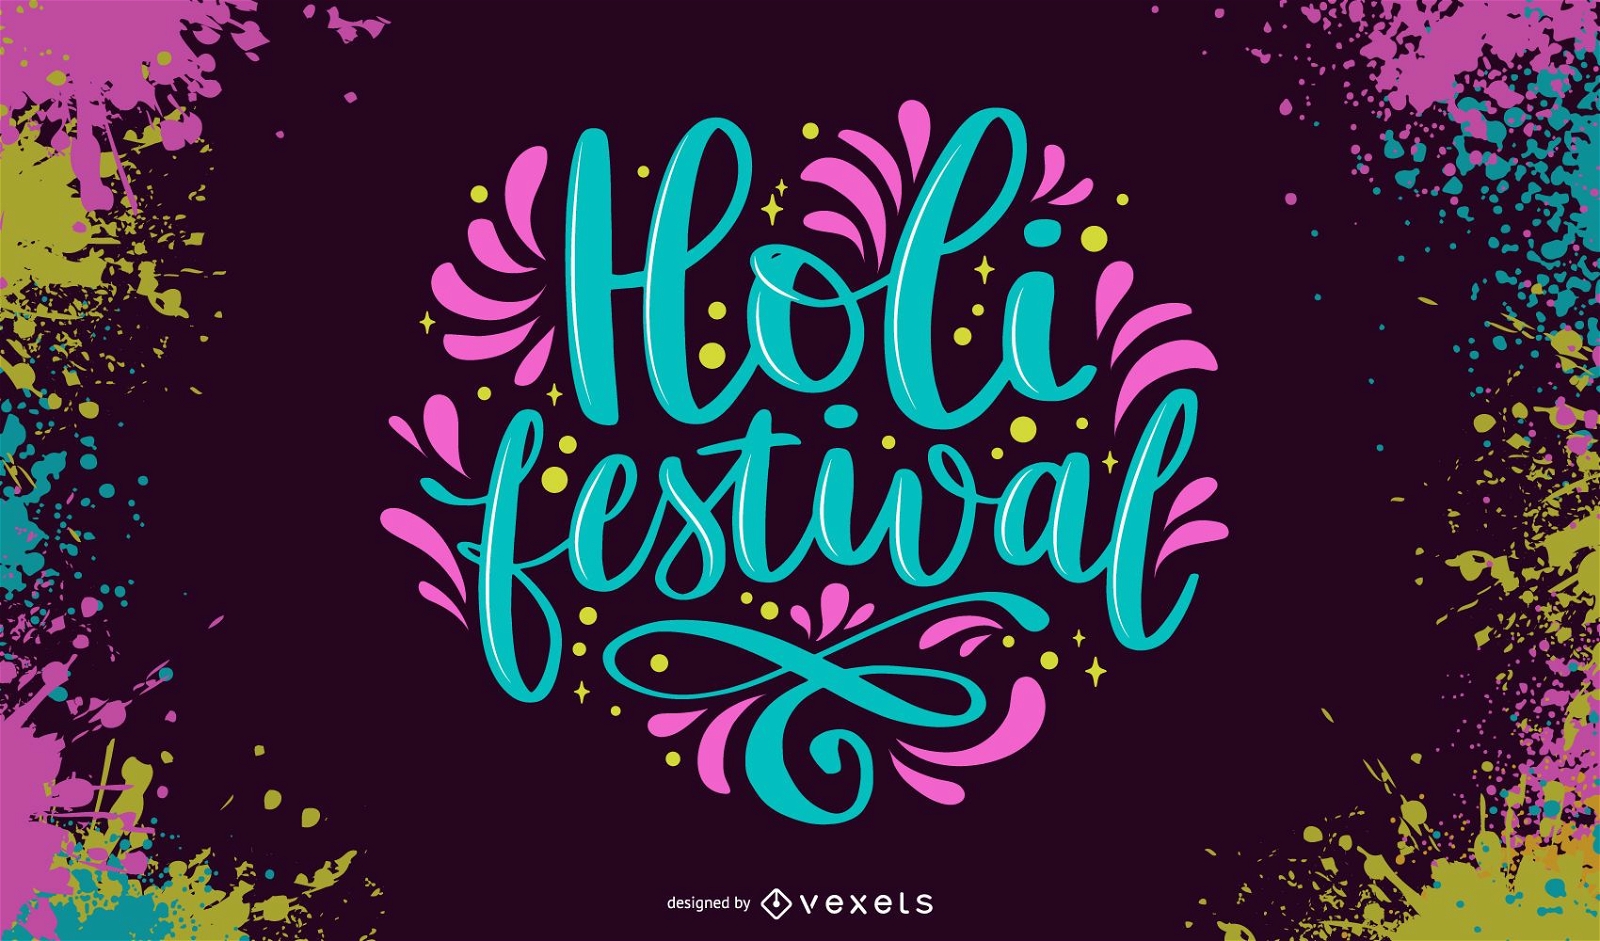 Letras coloridas do festival Holi